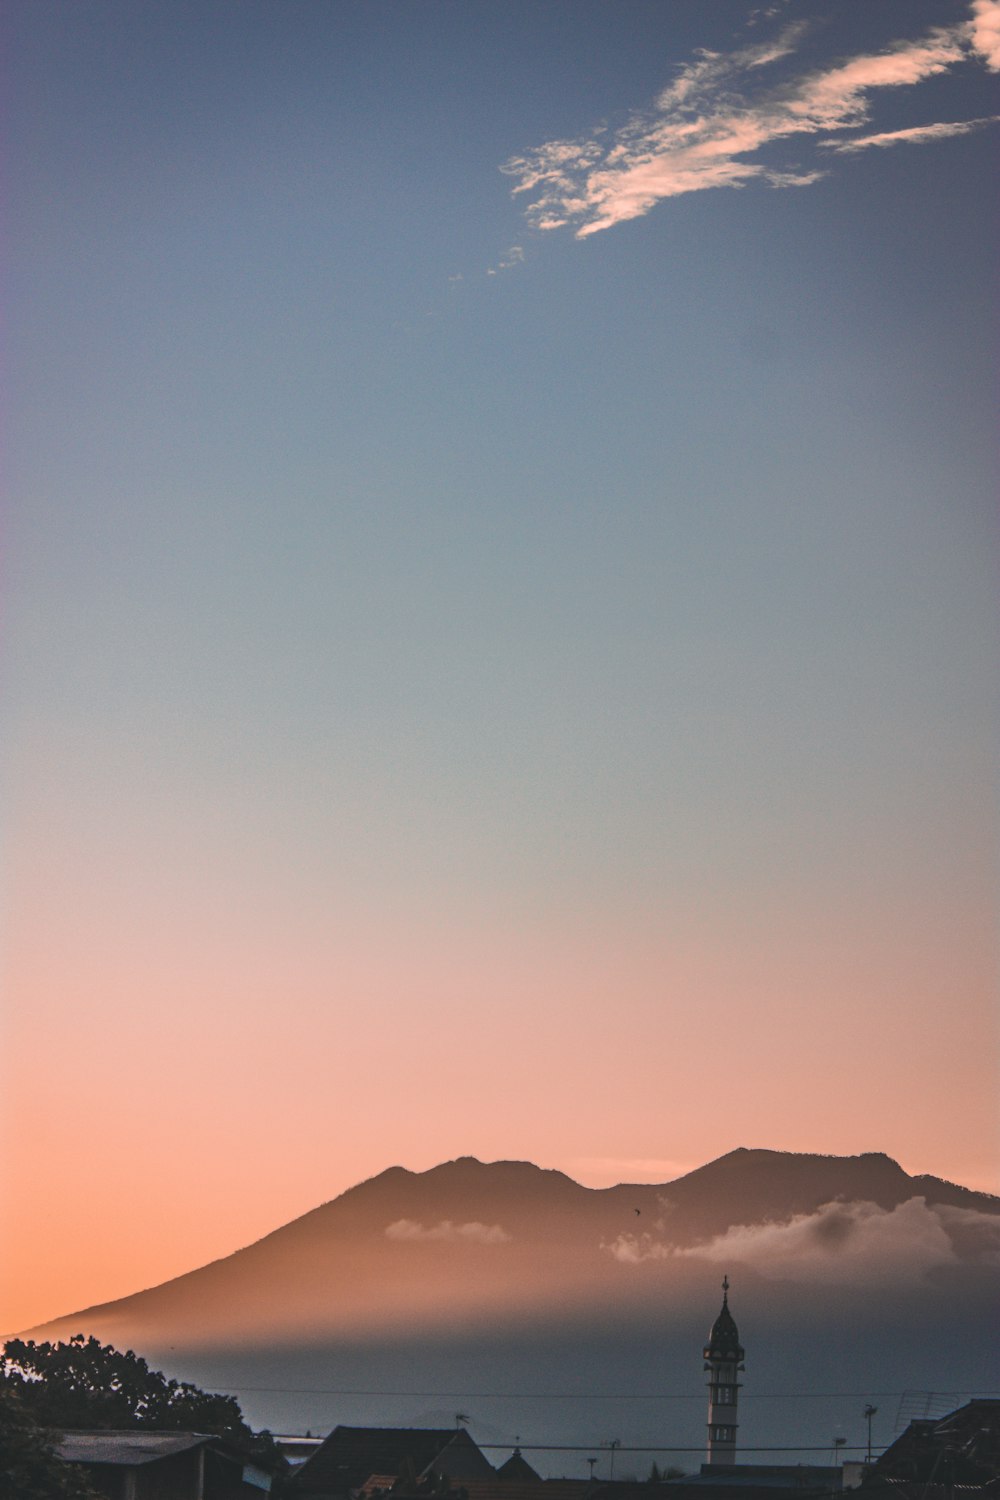 Silueta de montañas durante la puesta del sol